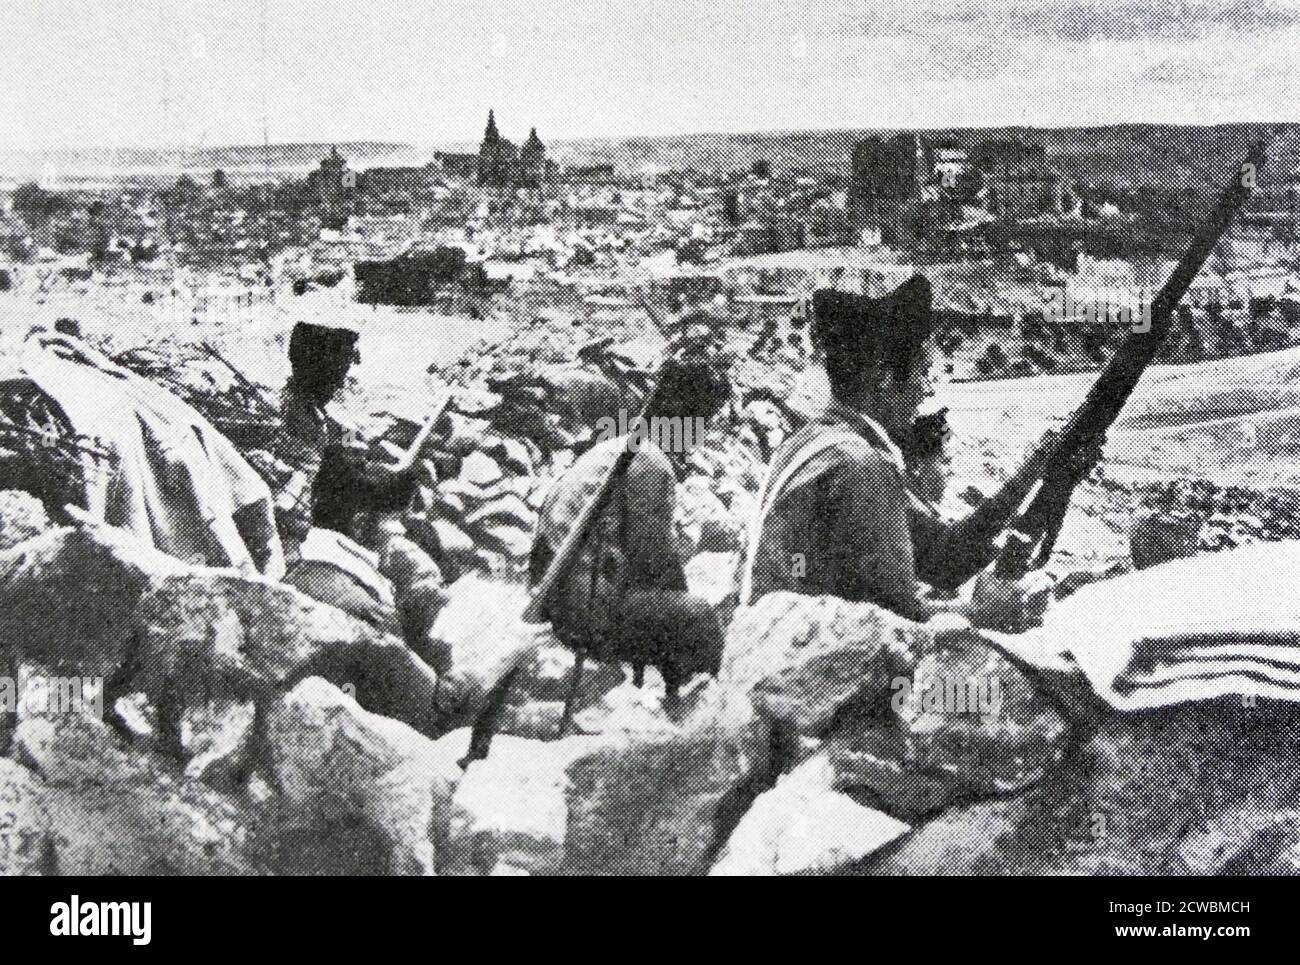 Fotografia in bianco e nero dell'assedio dell'Alcazar a Toledo durante la guerra civile spagnola (1936-1939). I nazionalisti liberarono l'Alcazar il 27 settembre 1936; i soldati nazionalisti ai margini della città. Foto Stock